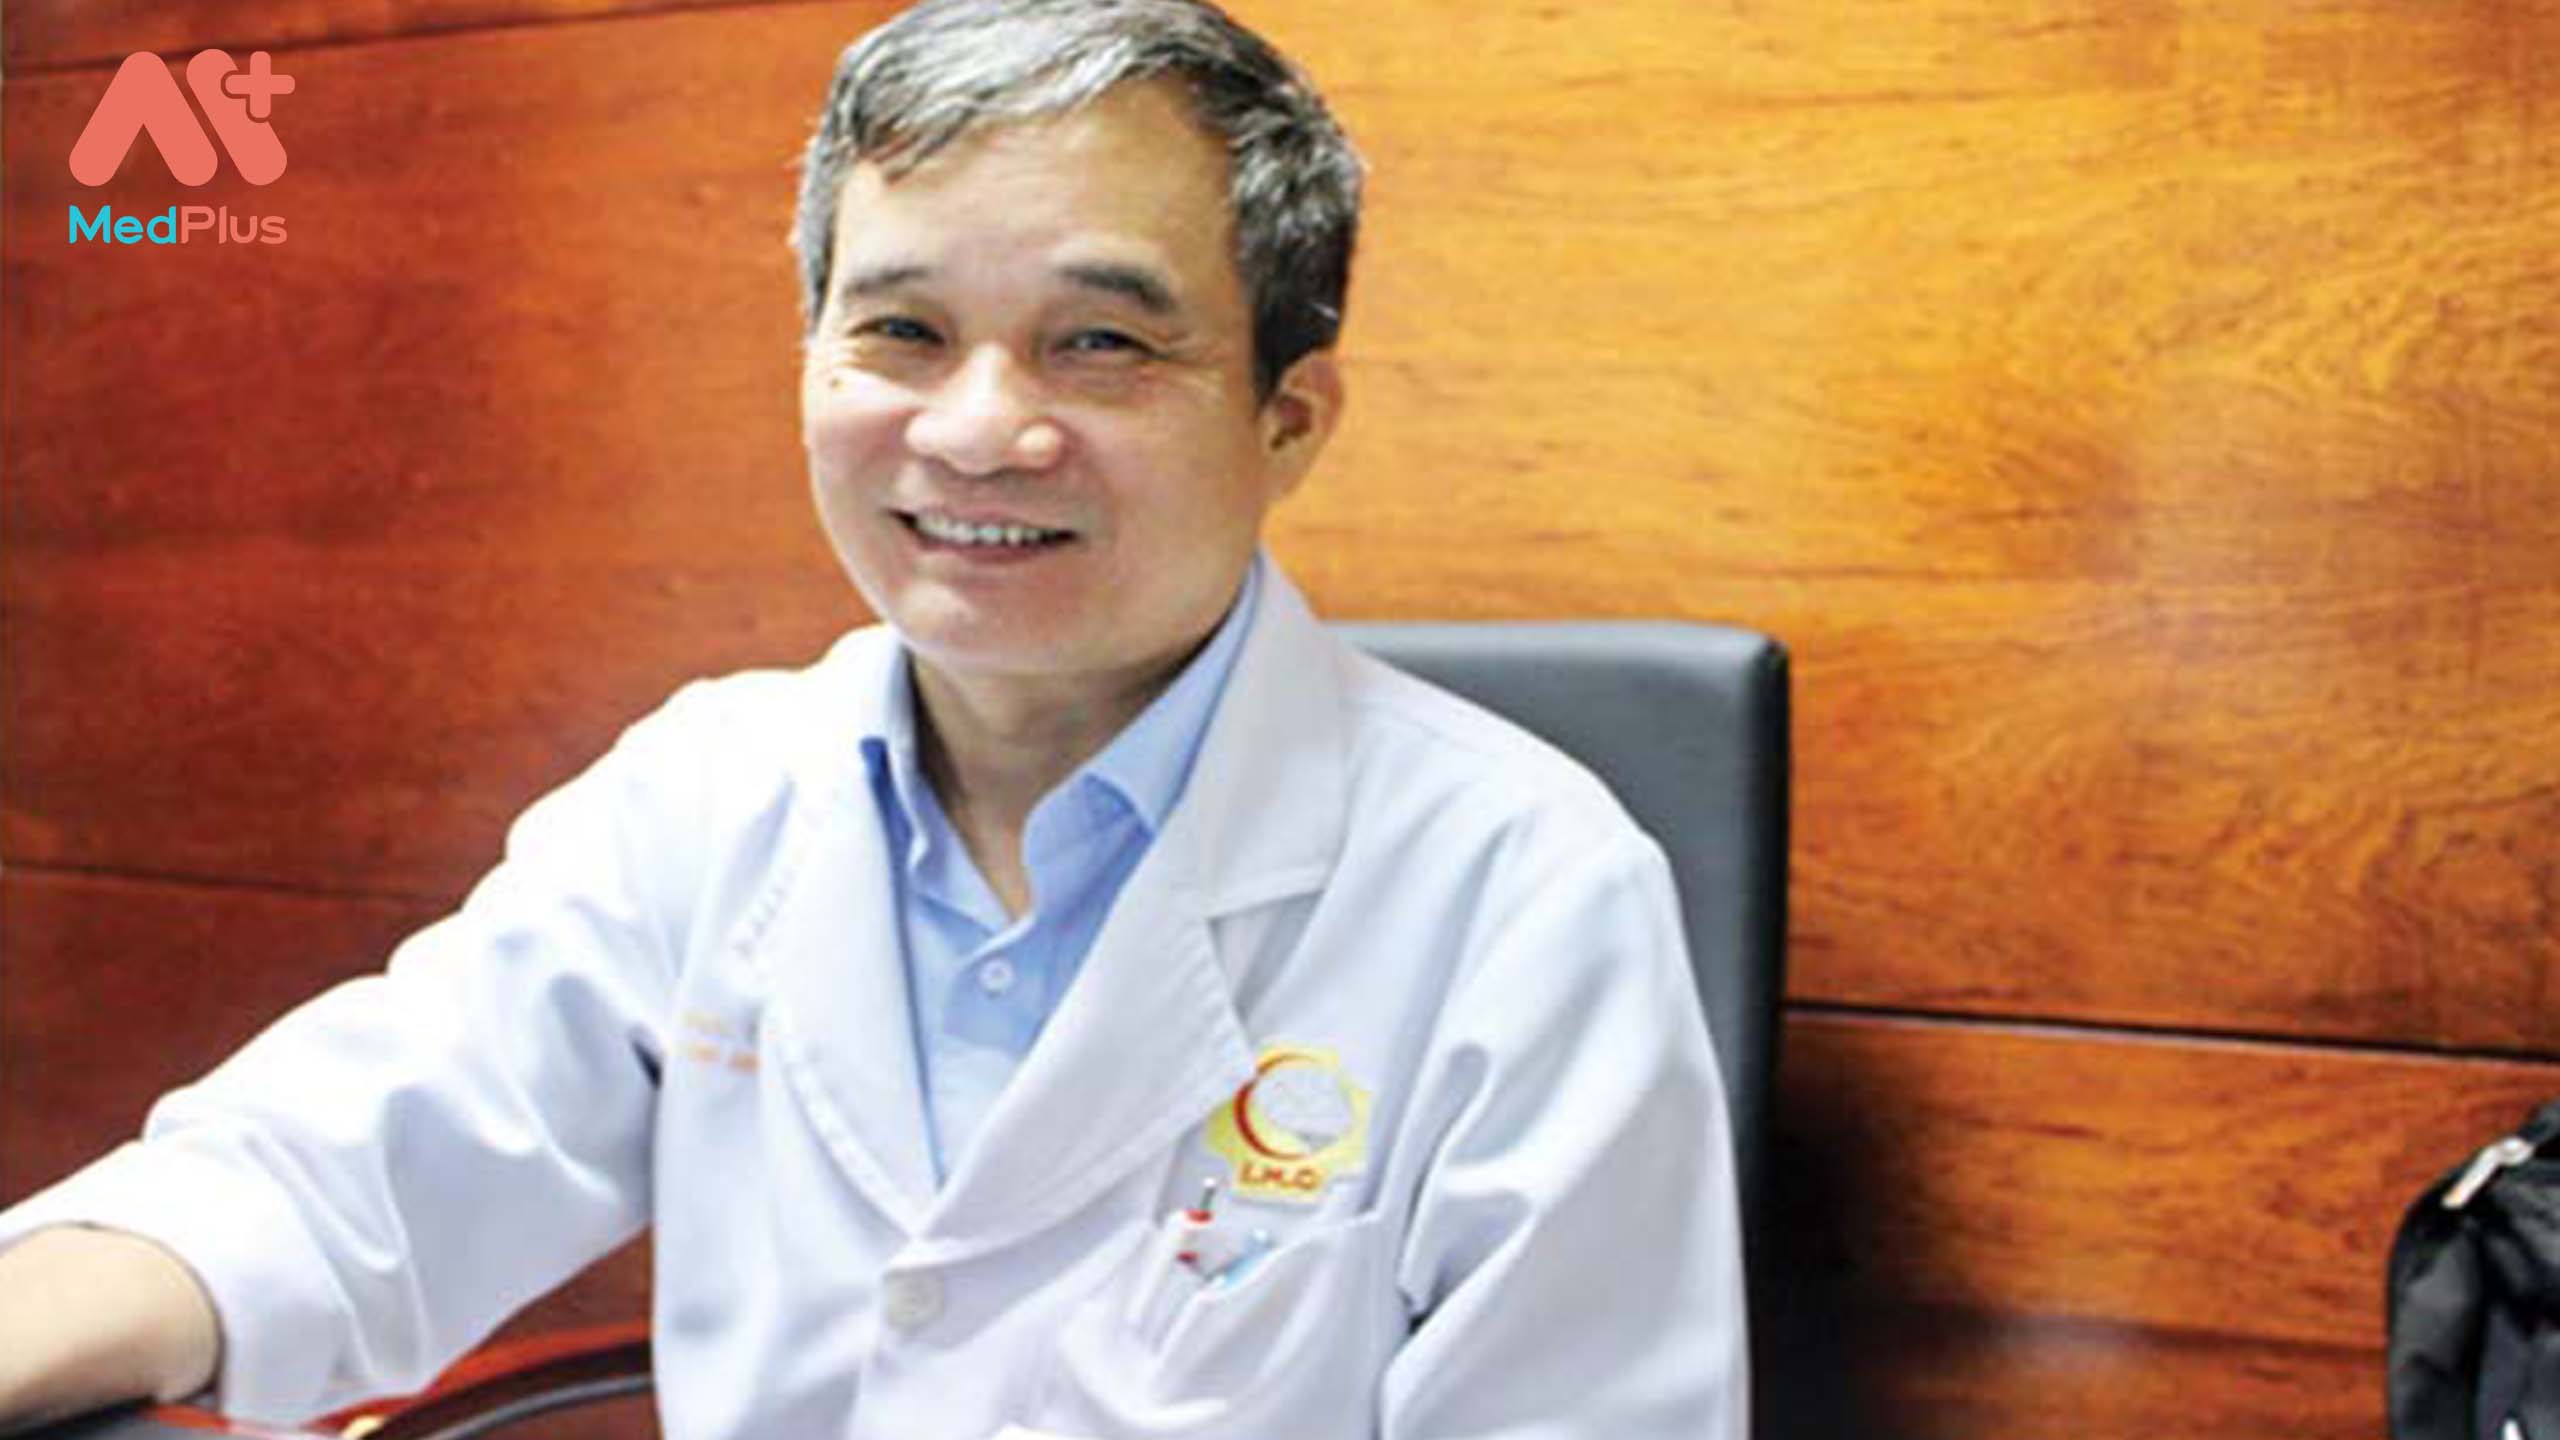 Phó Giáo sư, Tiến sĩ, Bác sĩ Nguyễn Hữu Công - Bác sĩ chữa rối loạn tiền đình giỏi tại TP.HCM.